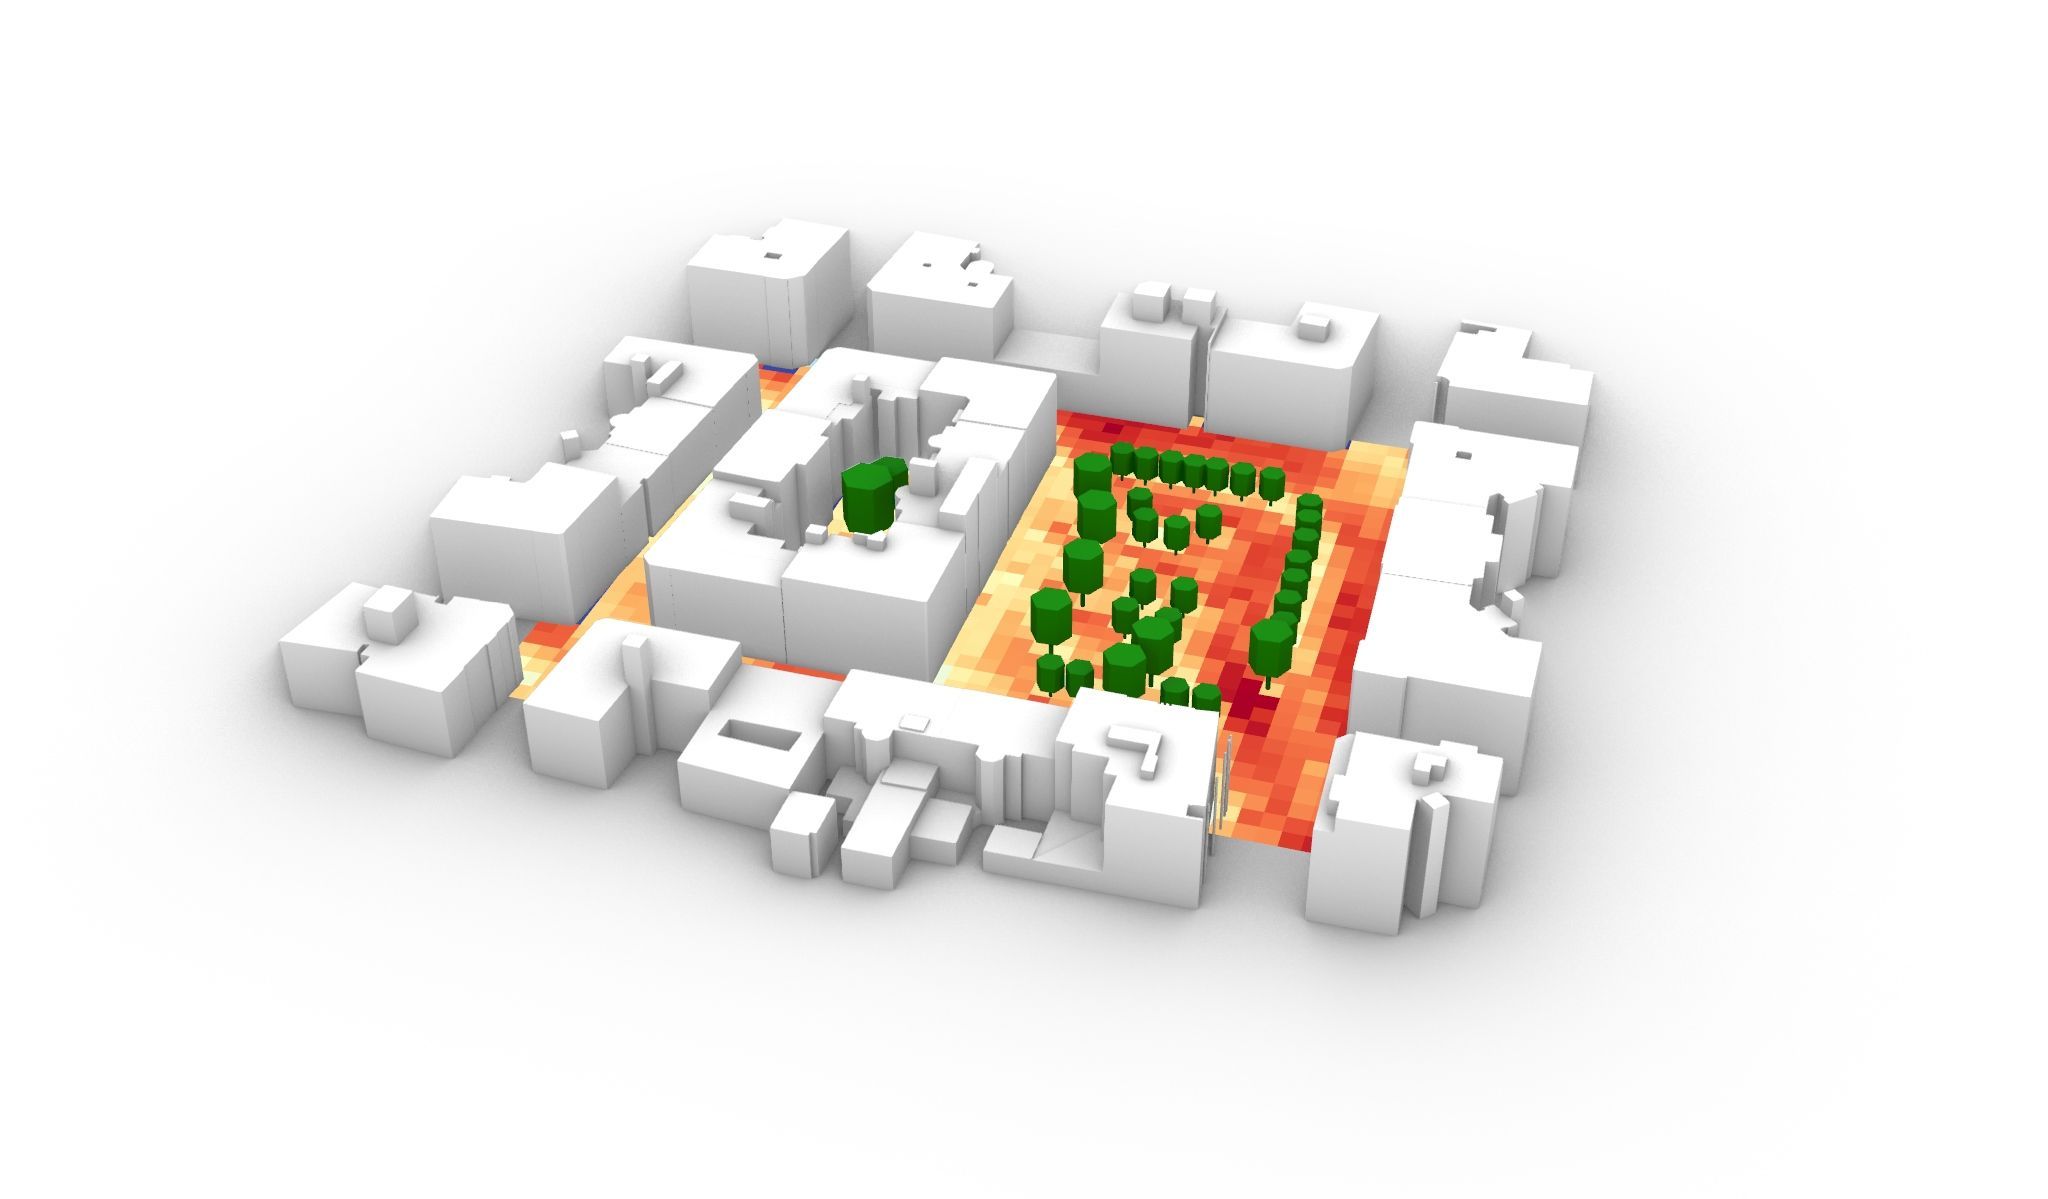 Visualisierung eines vereinfachten urbanen Bereichs, in welchem in gelben, orangen und roten Farben Hitzeinseln dargestellt sind.